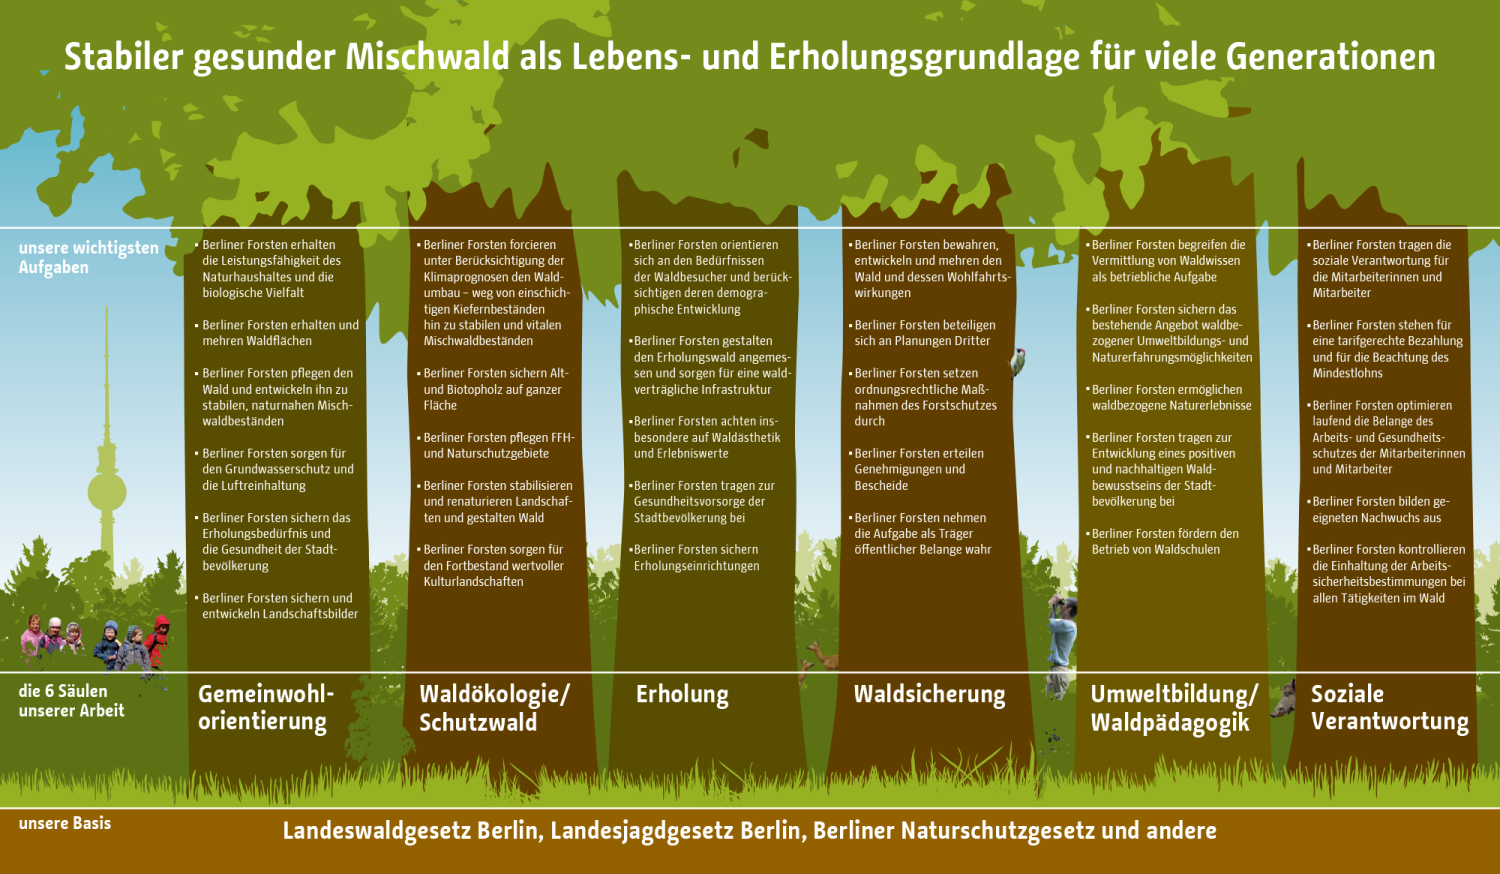 Aufgabenspektrum der Berliner Forsten 